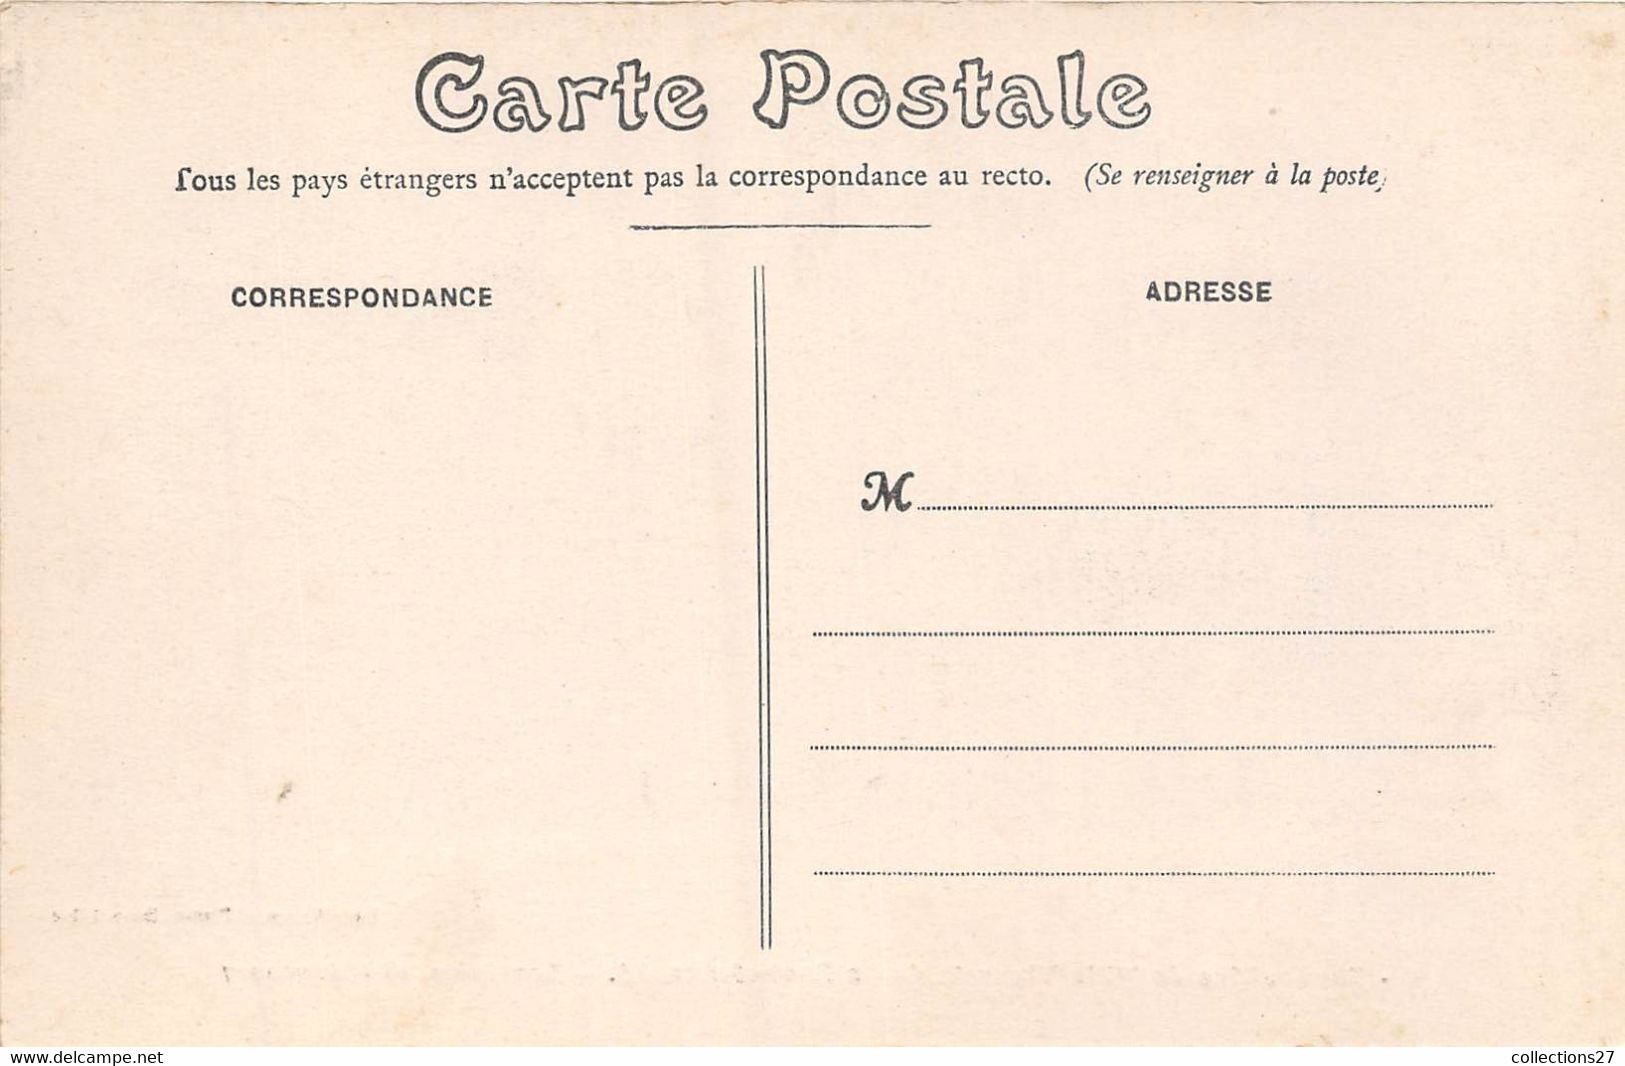 72-BONNETABLE-FUNERAILLES DE M. LE VICOMTE DE LA ROCHEFOUCAULT- BONNETABLE 28 FEVRIER 1907 - Bonnetable